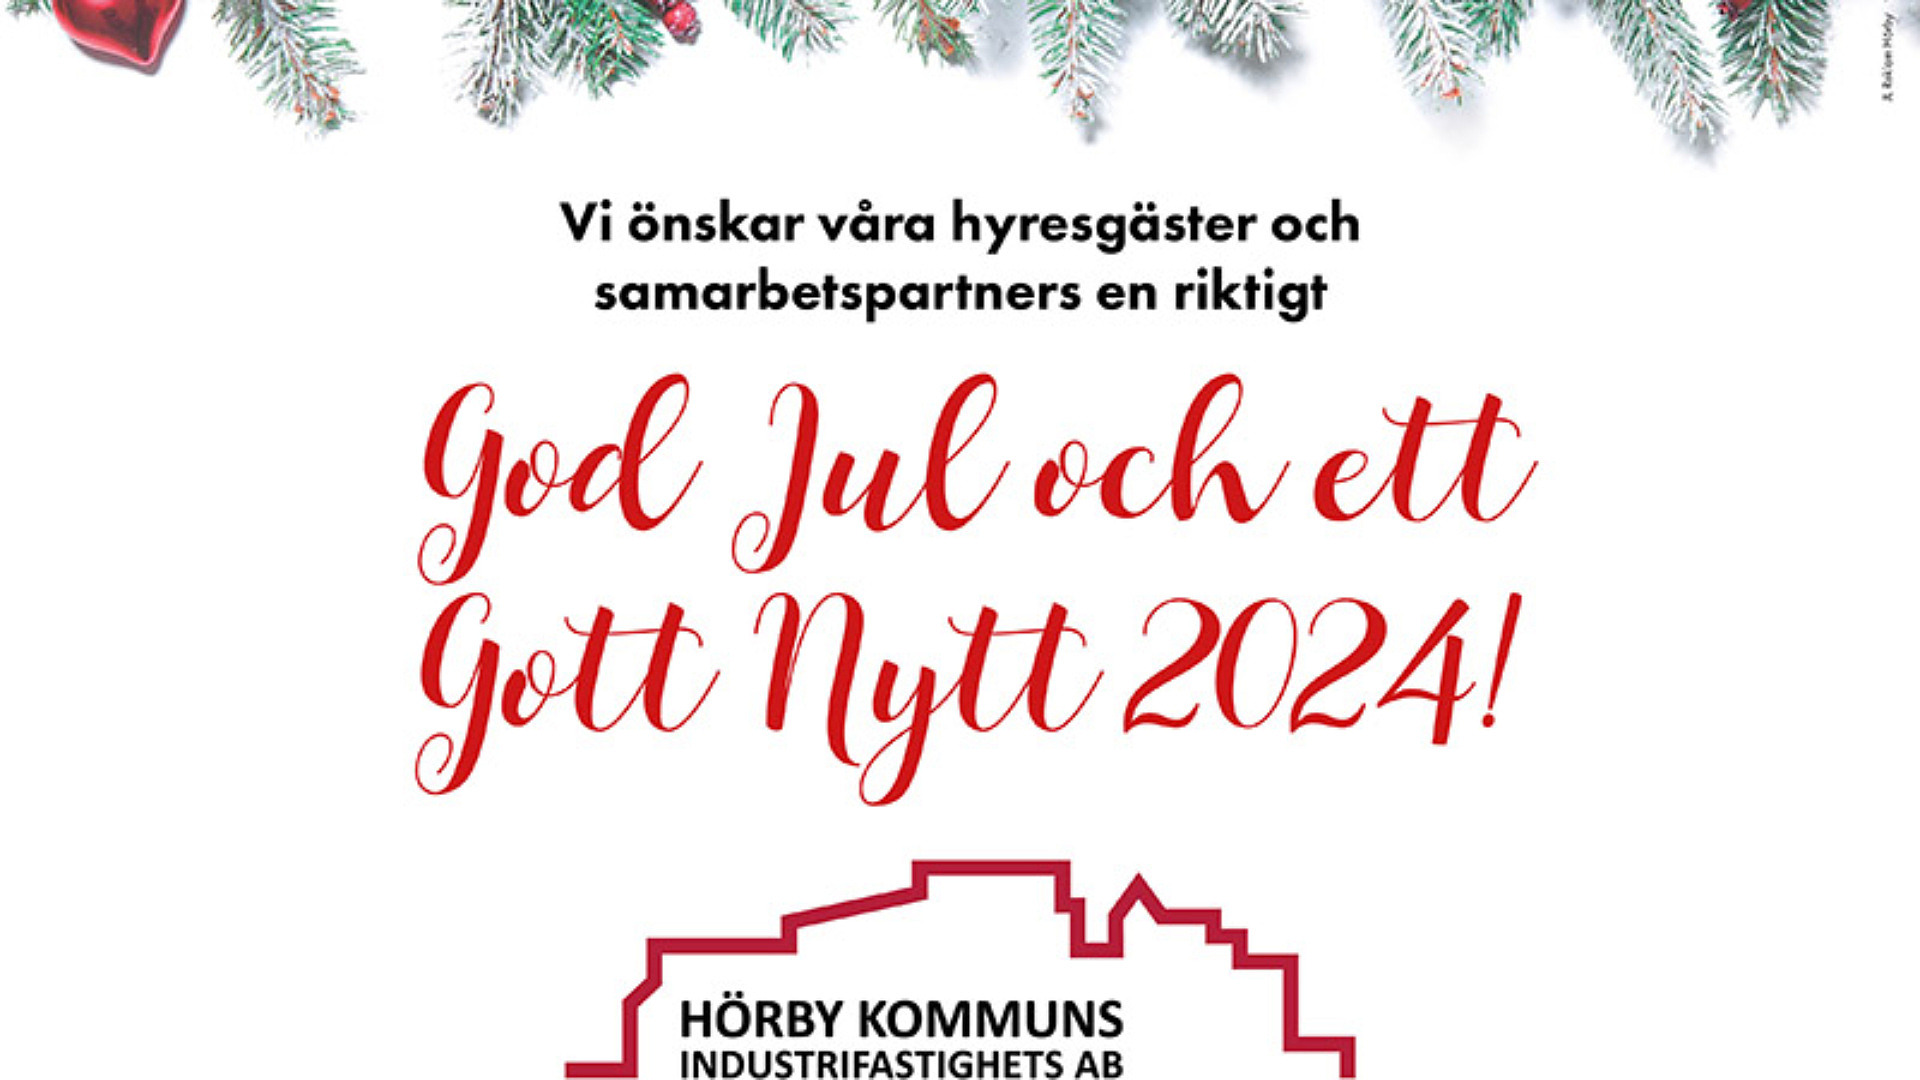 Julhälsning från Hörby Kommuns industrifastighets AB i form av text i rött på vit bakgrund